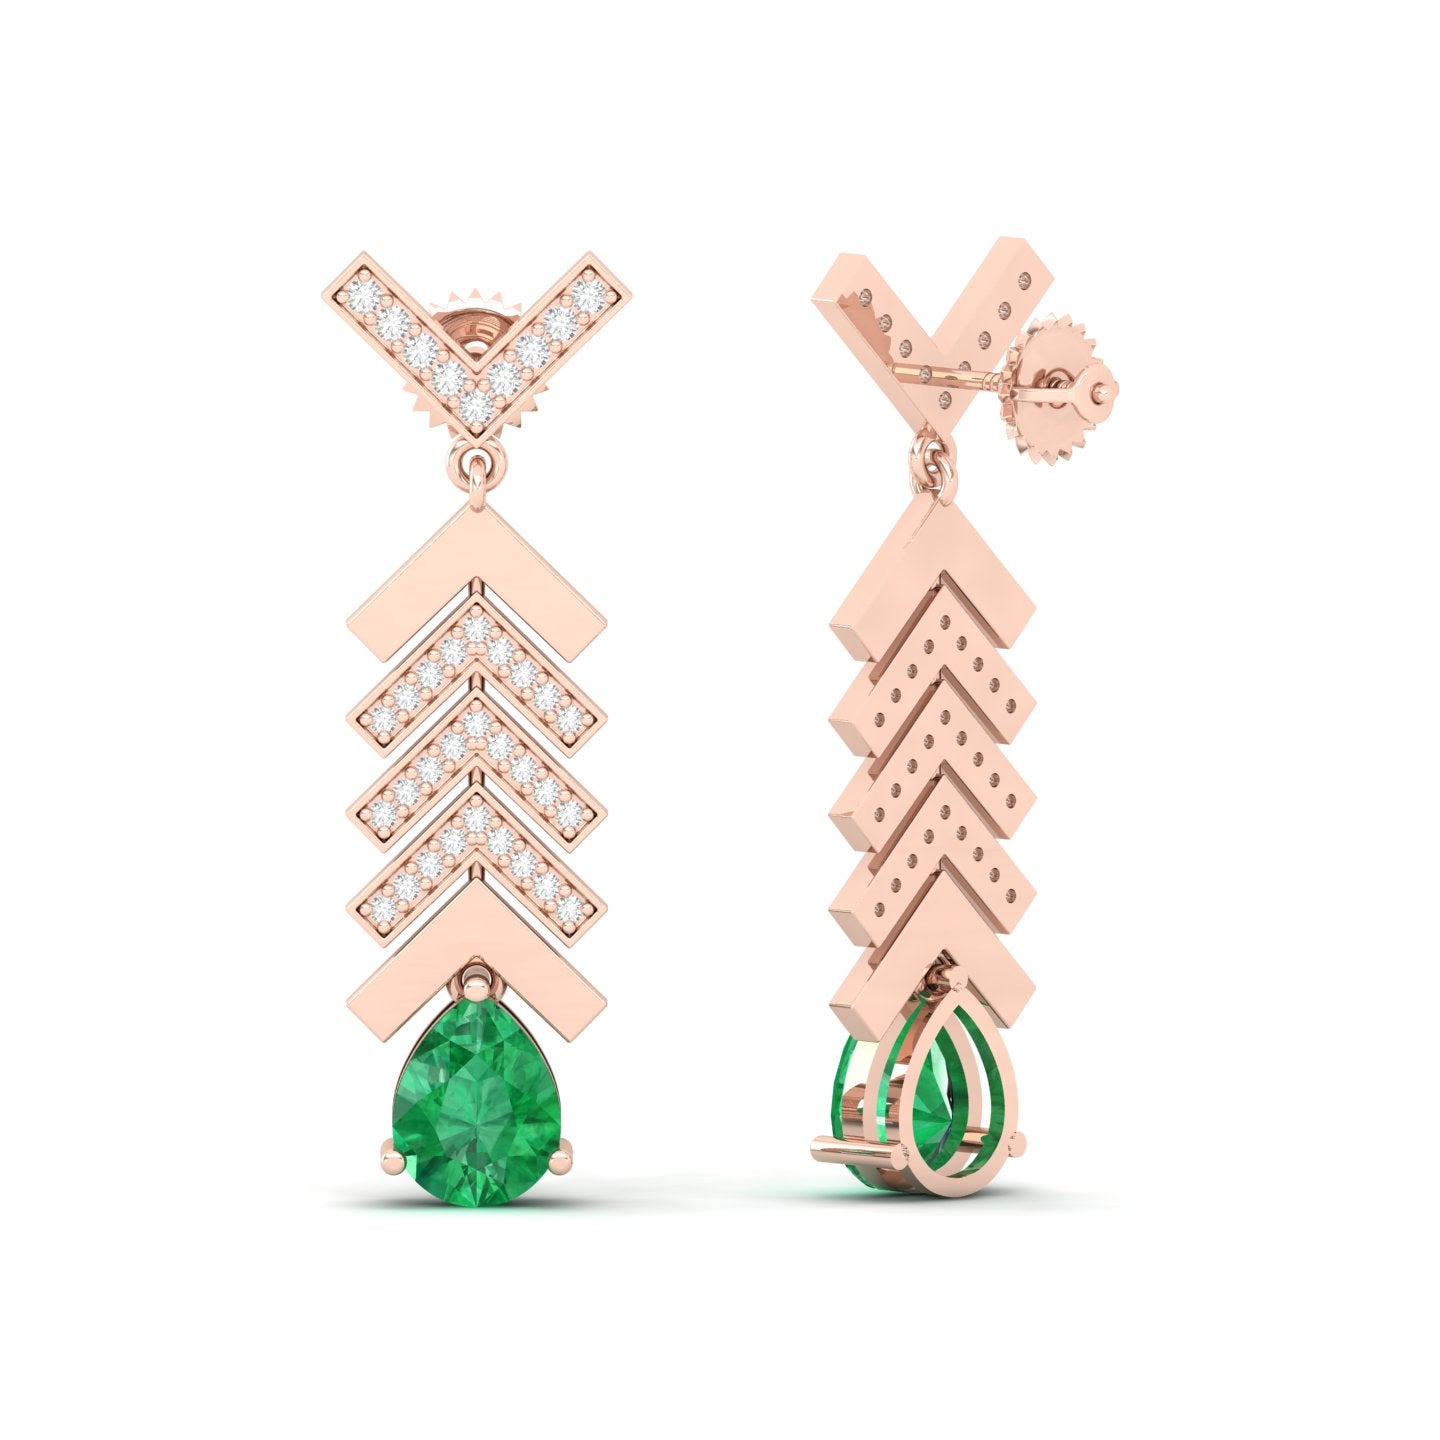 Maurya Emerald Fleche Dangle Earrings with Diamonds